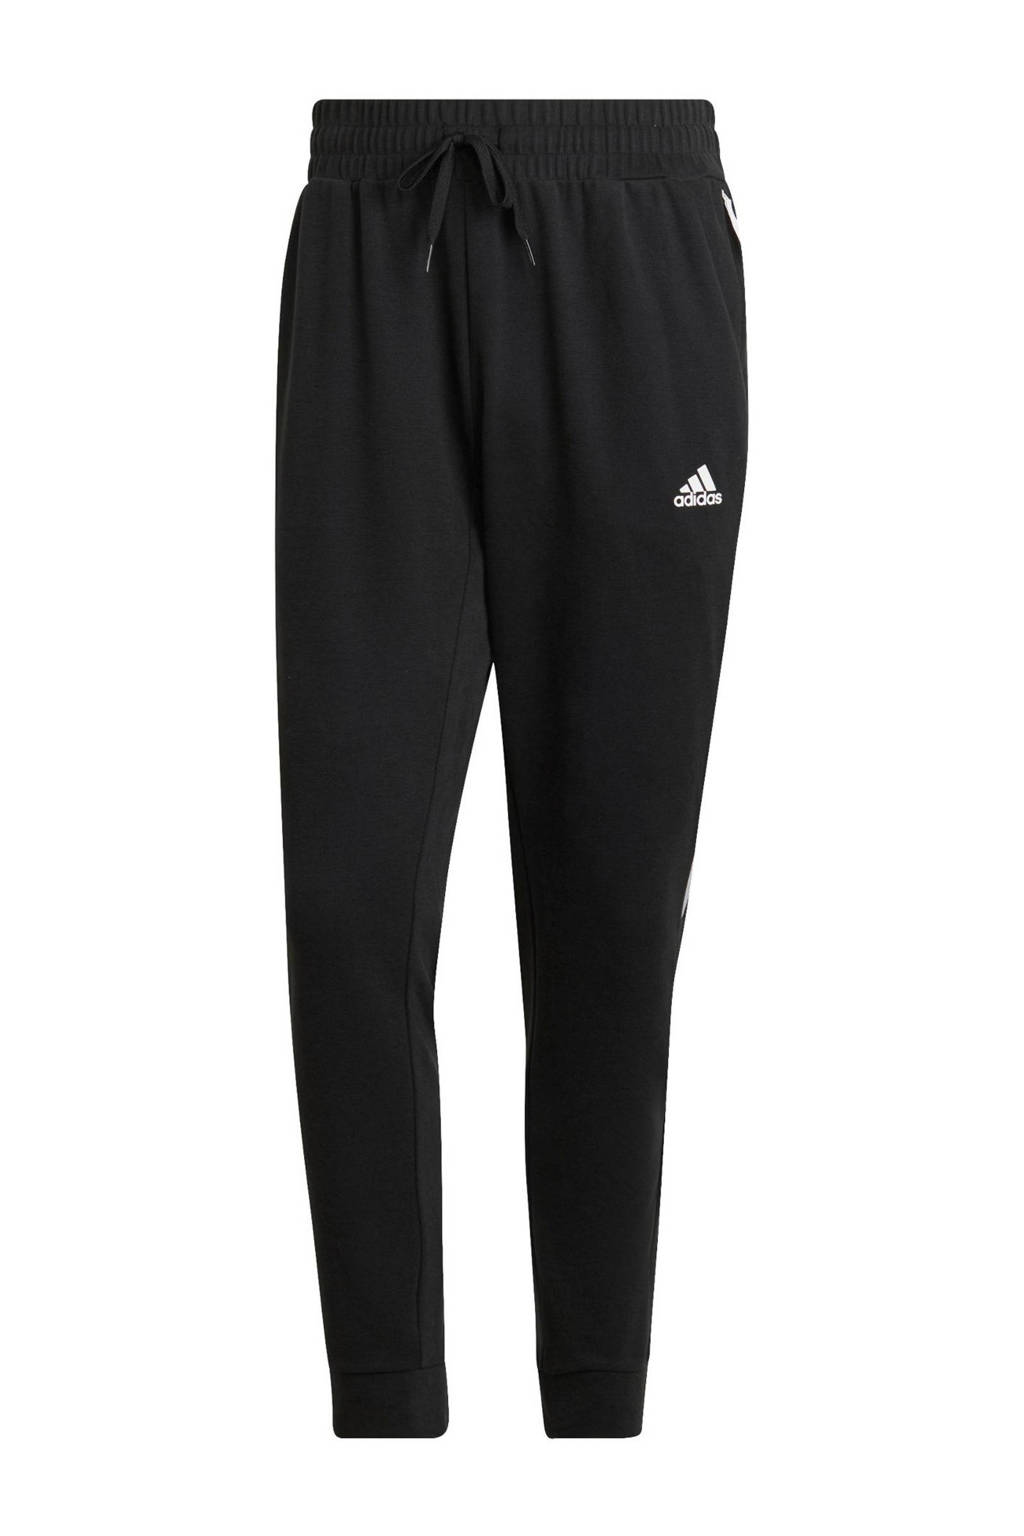 Zwarte heren adidas Performance Senior joggingbroek van katoen met regular fit, regular waist en logo dessin